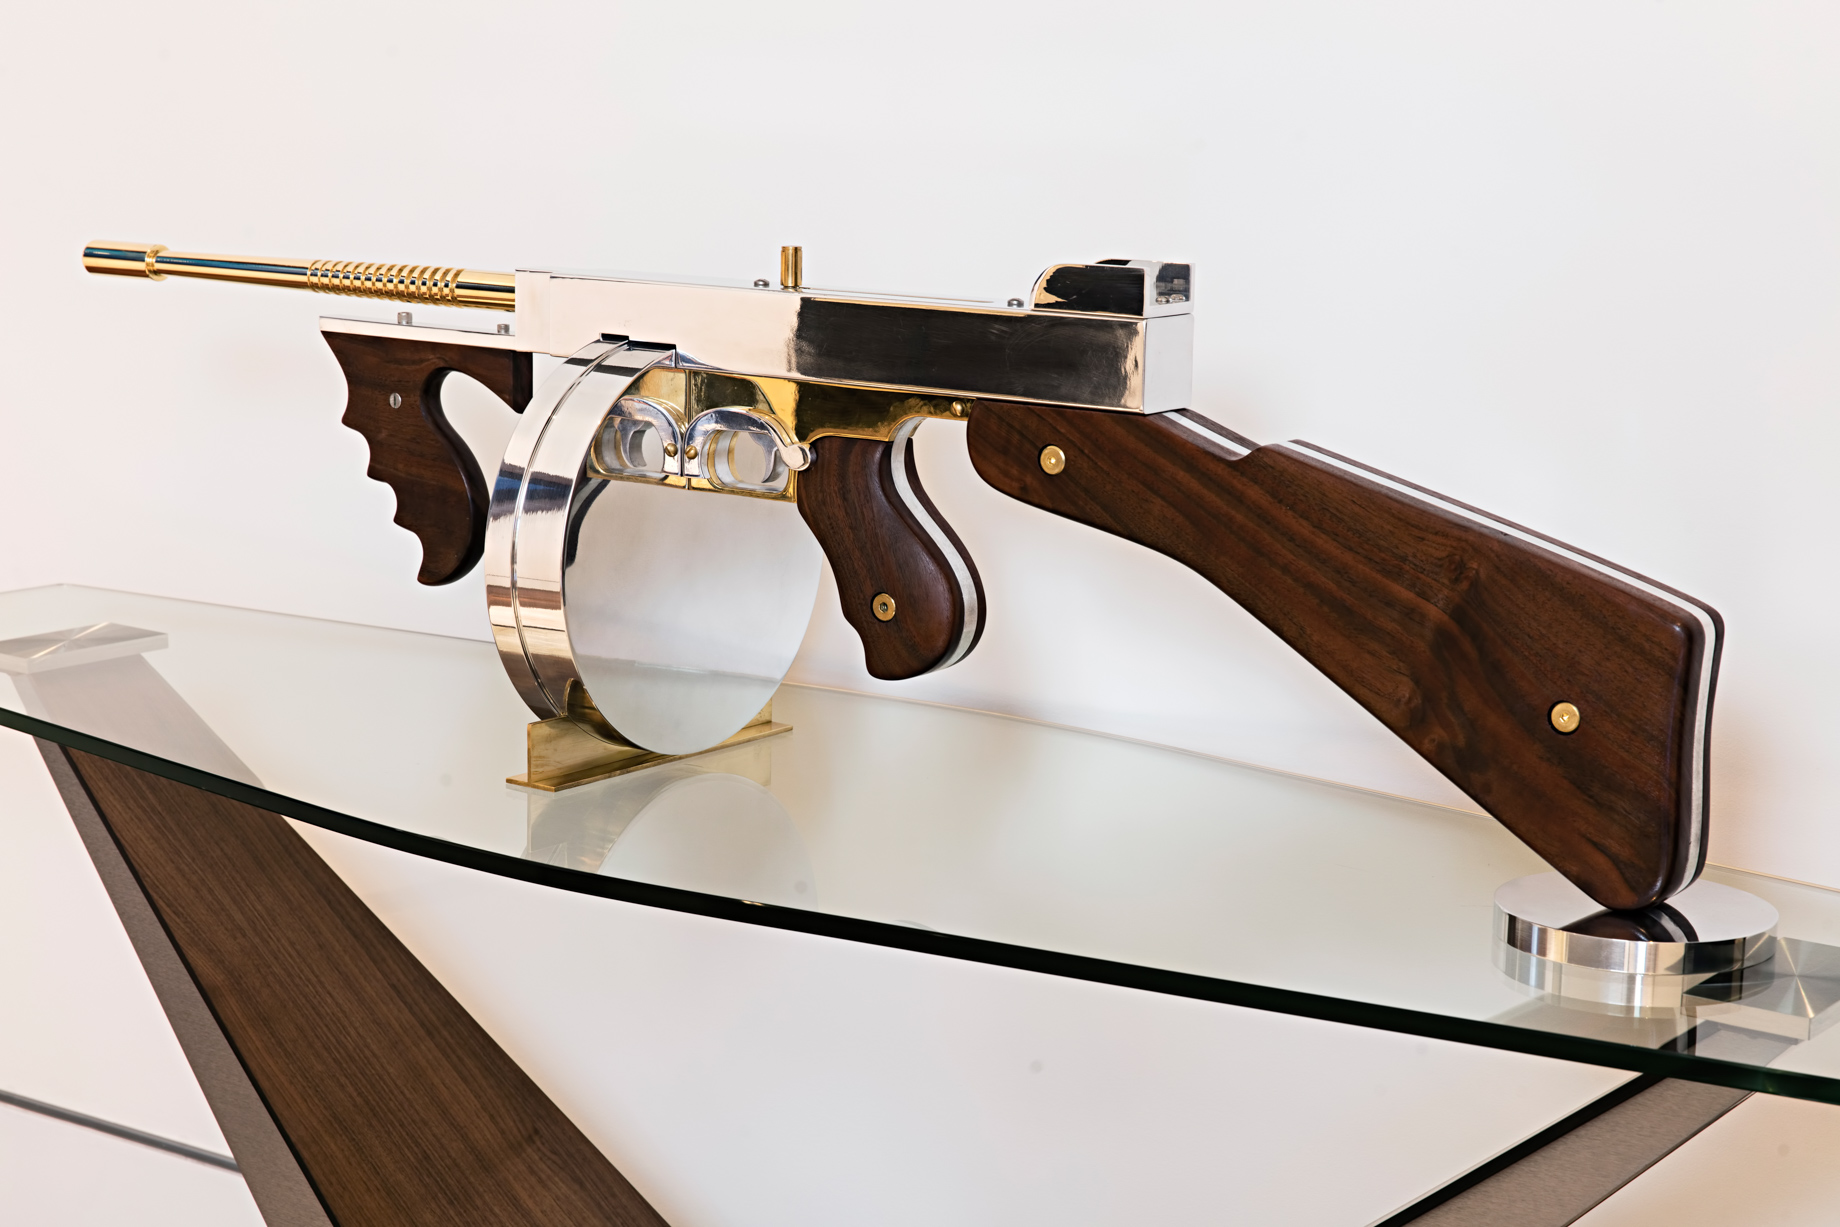 Gale Hart Chrome Gun Sculpture – 924 Bel Air Rd, Los Angeles, CA, USA